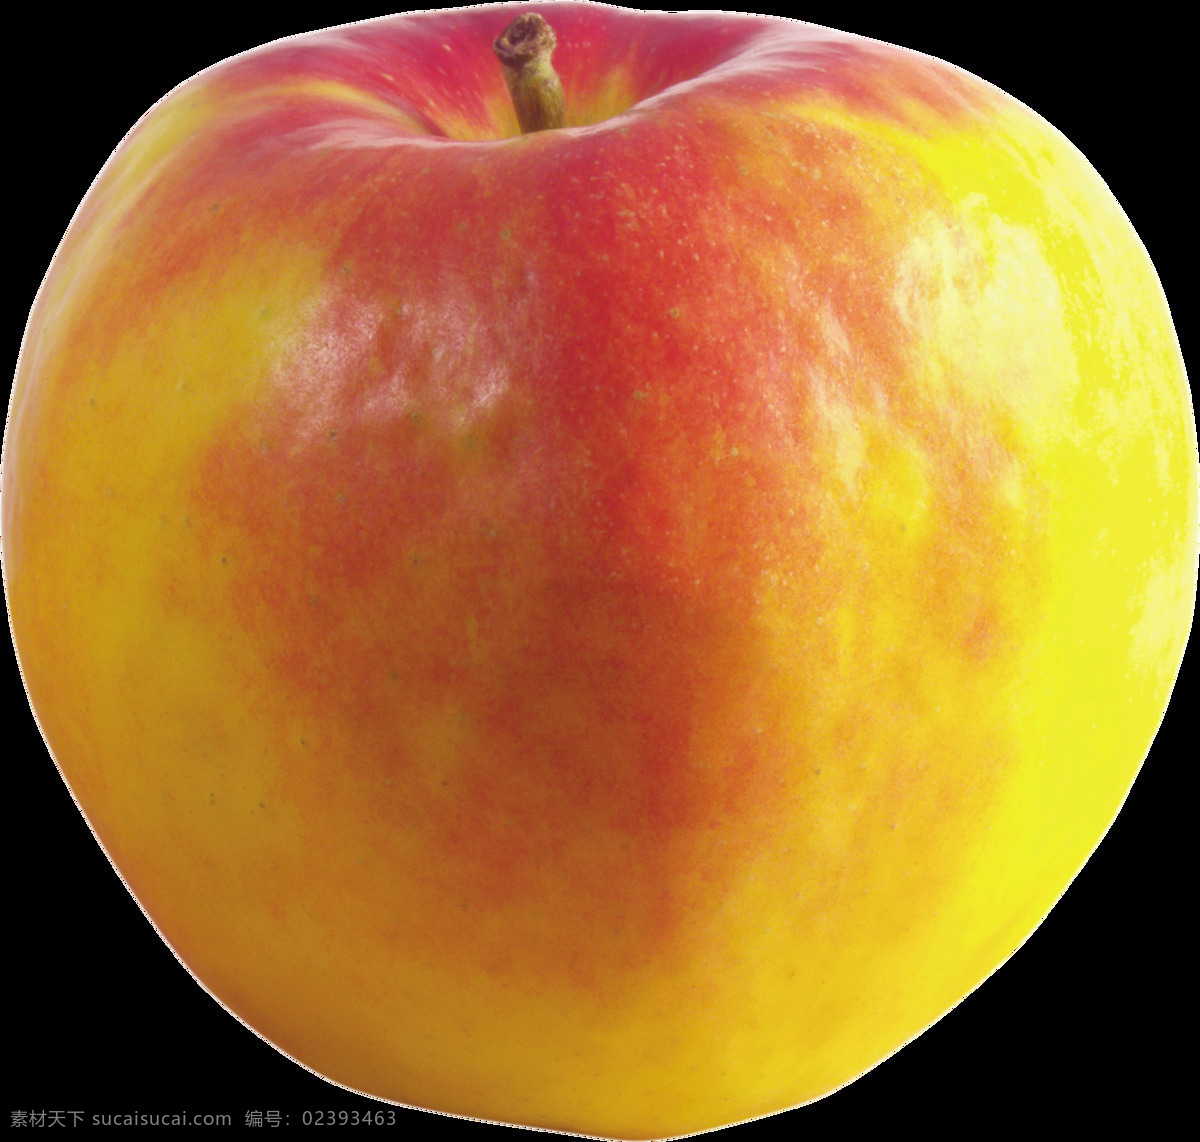 彩色 苹果 免 抠 透明 图 层 青苹果 苹果卡通图片 苹果logo 苹果简笔画 壁纸高清 大苹果 红苹果 苹果梨树 苹果商标 金毛苹果 青苹果榨汁